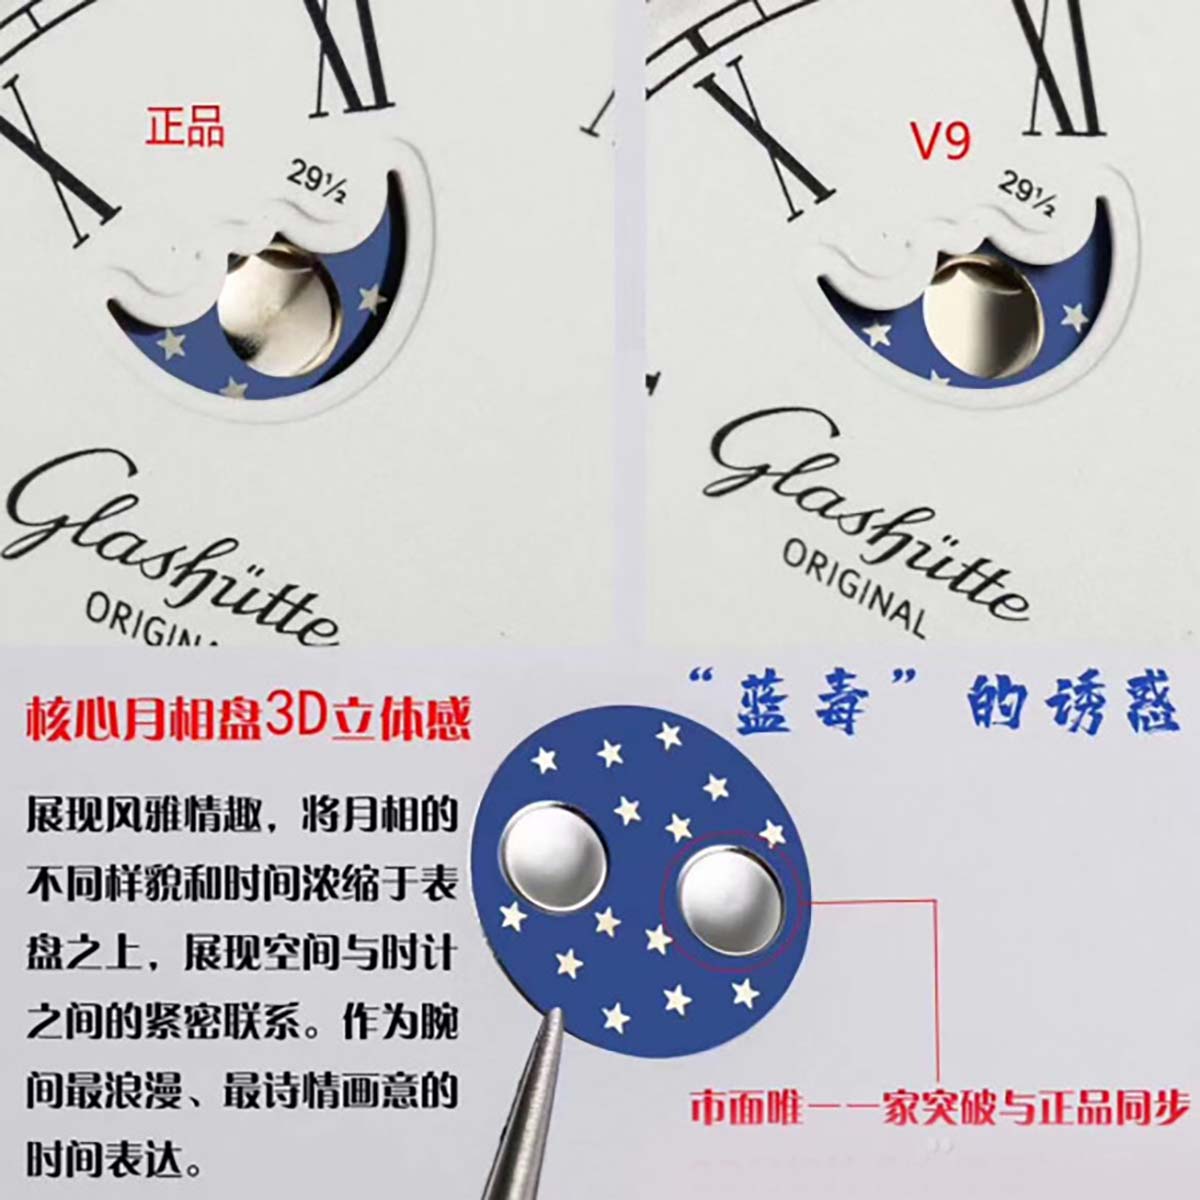 V9厂格拉苏蒂原创议员大日历月相复刻腕表对比正品图文评测插图9